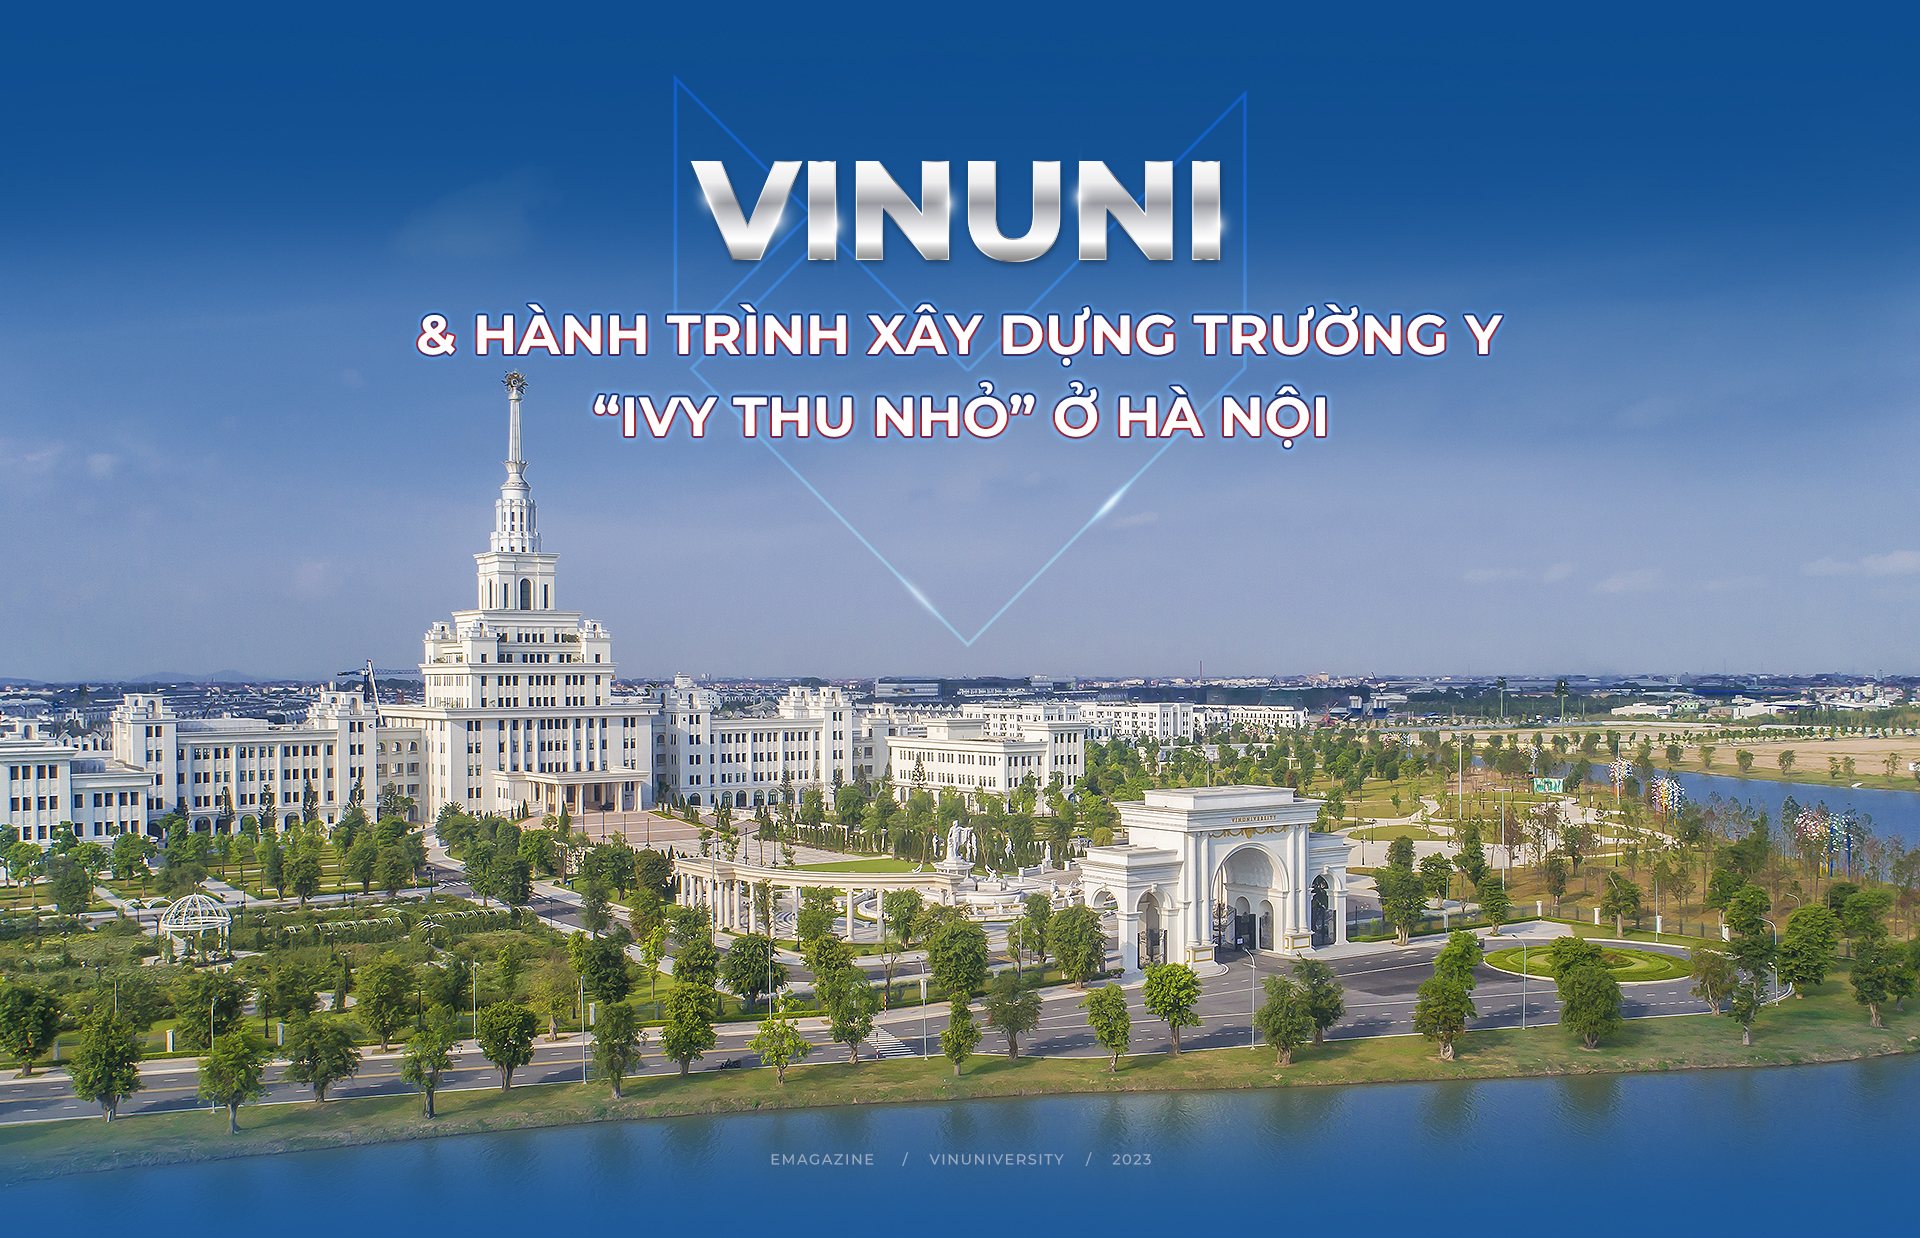 VinUni và hành trình xây dựng trường y ‘Ivy thu nhỏ’ ở Hà Nội-1